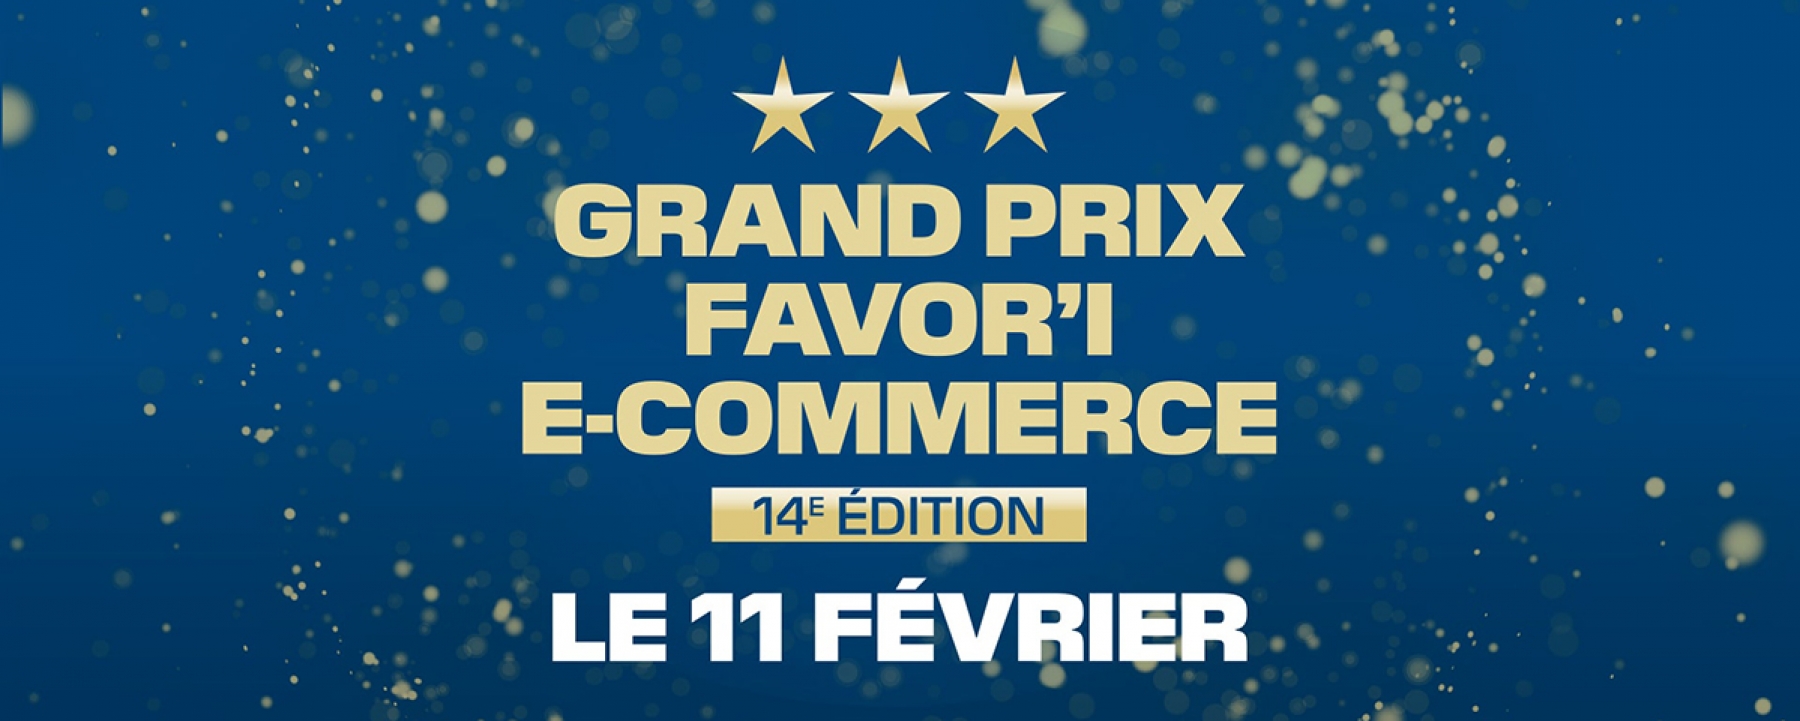 14e édition du Grand Prix Favor'i du e-commerce, un événement organisé par la FEVAD le 11 février